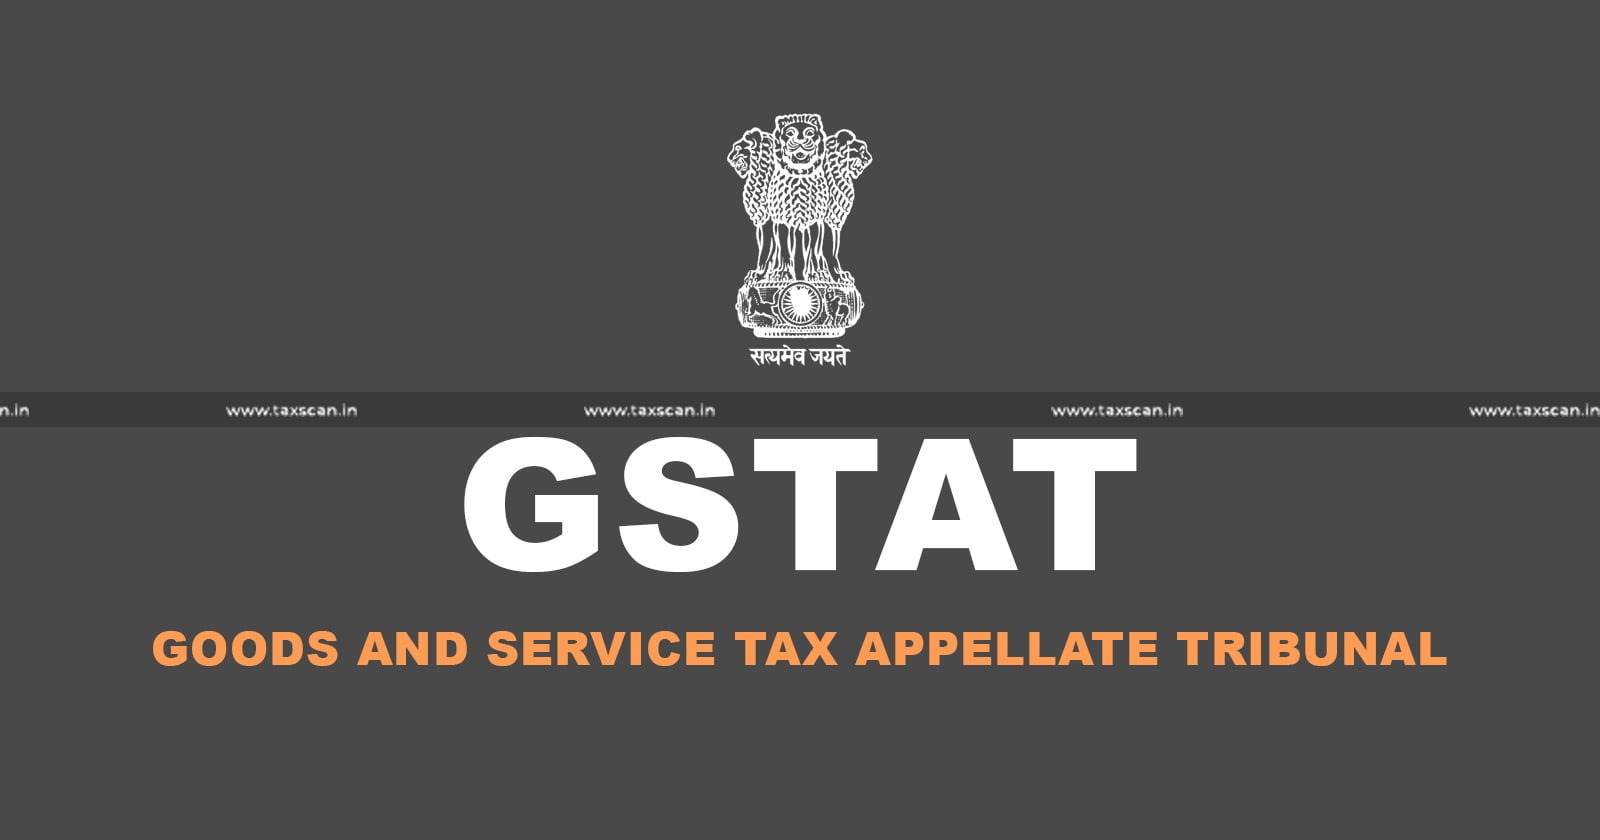 GST Appellate Tribunal - Tax update - GSTAT - tax news - Taxscan